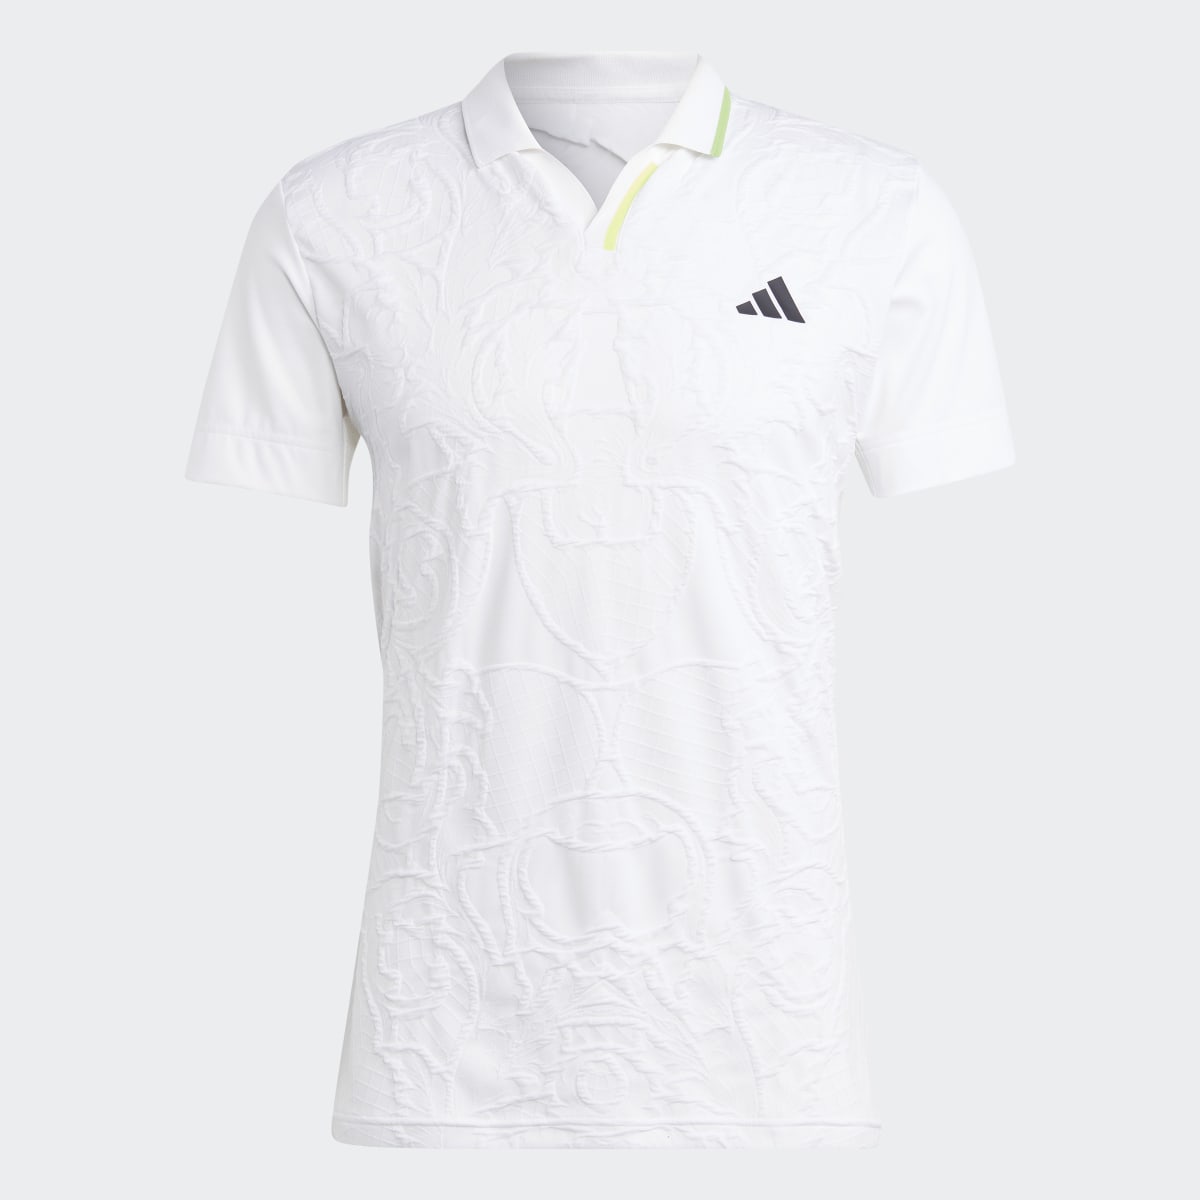 Adidas AEROREADY FreeLift Pro Tennis Polo Shirt. 8